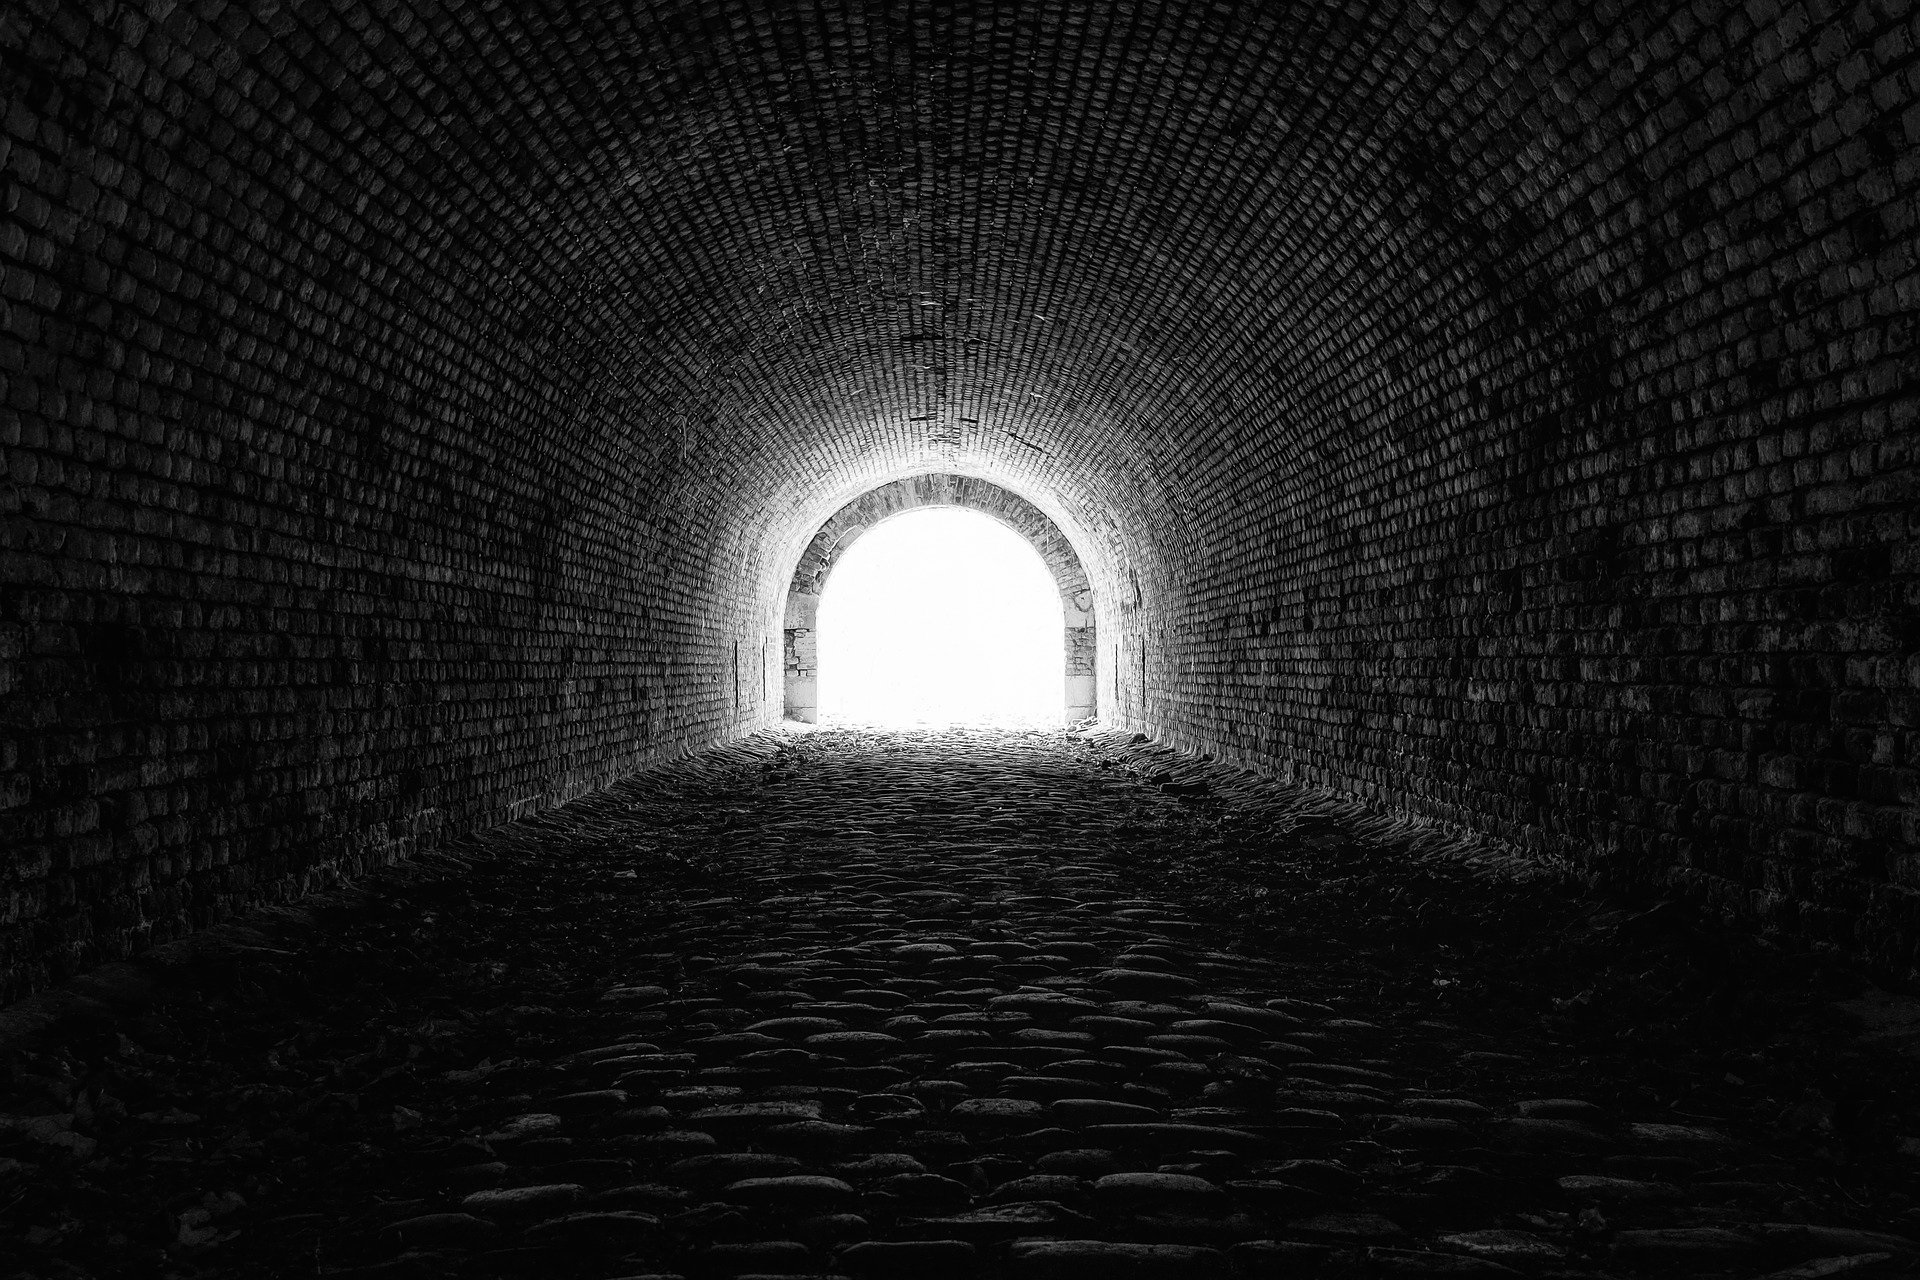 Ein Tunnelende durch das Licht scheint